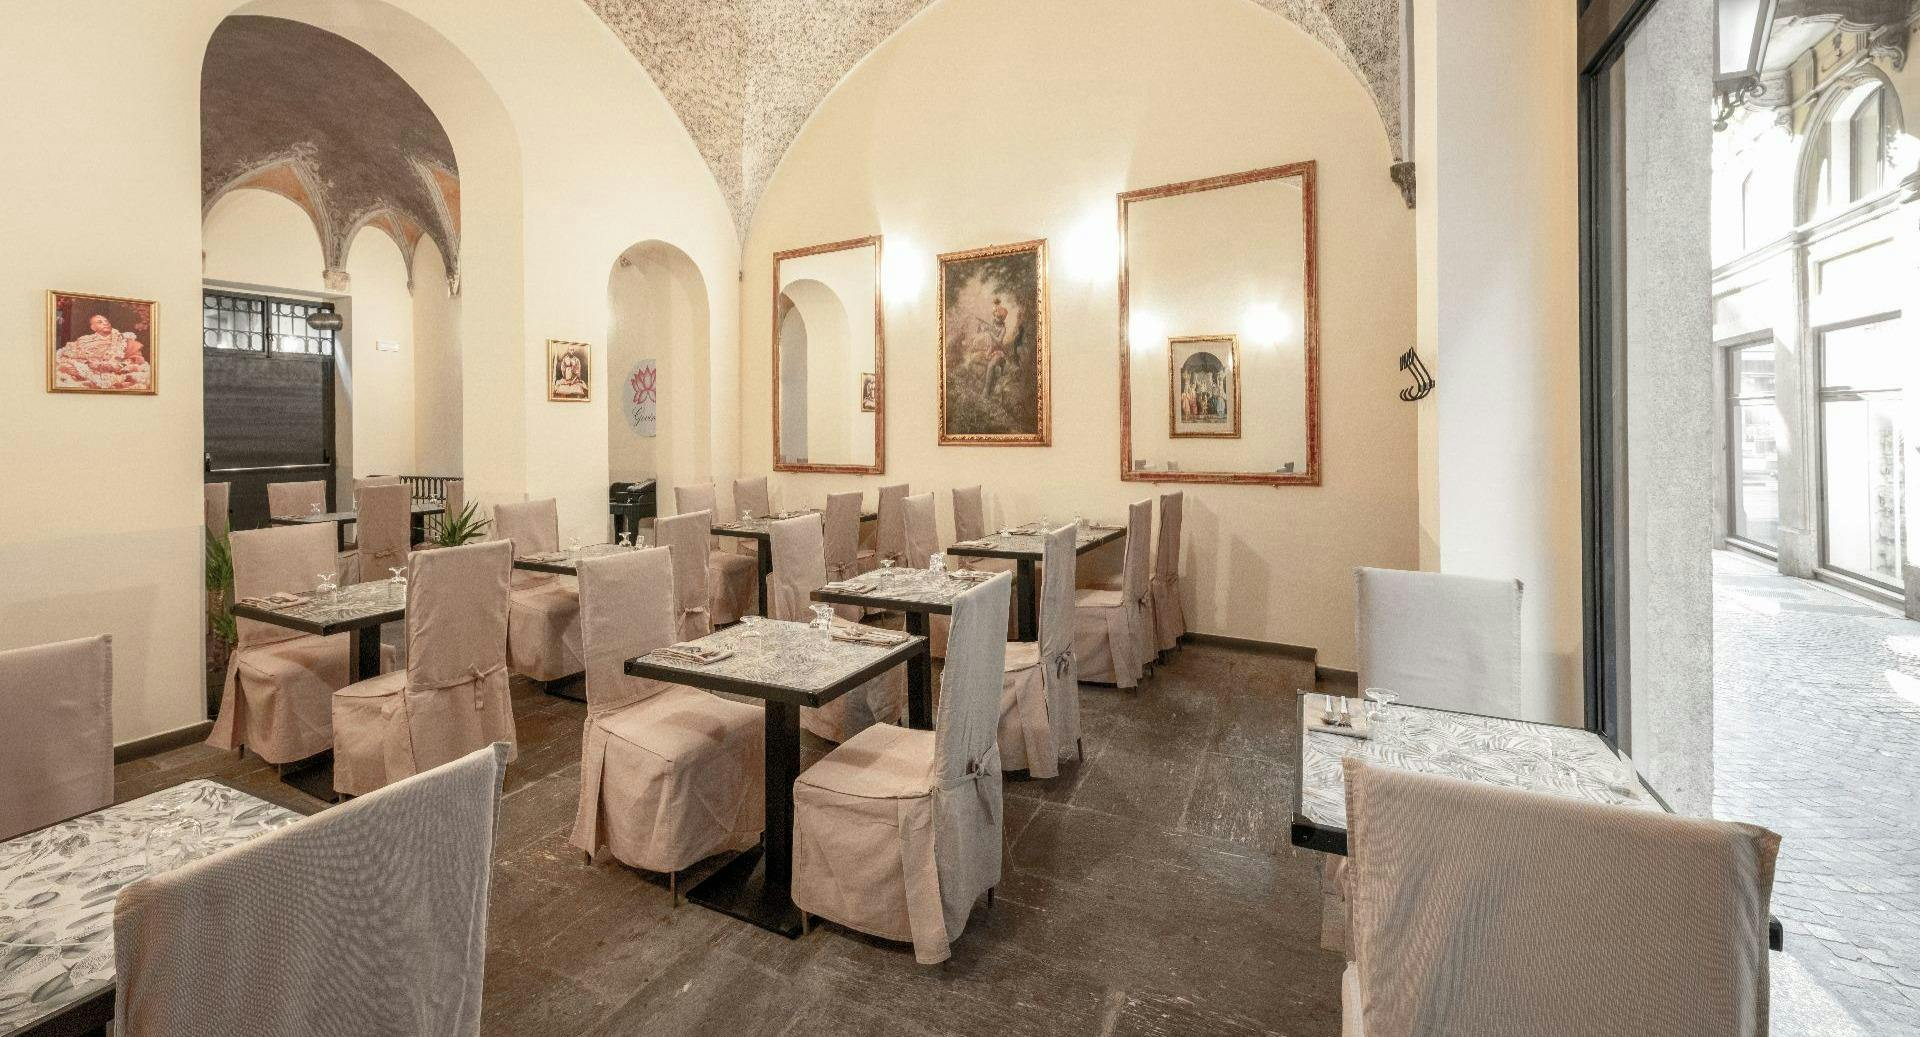 Photo of restaurant Govinda in Centre, Milan